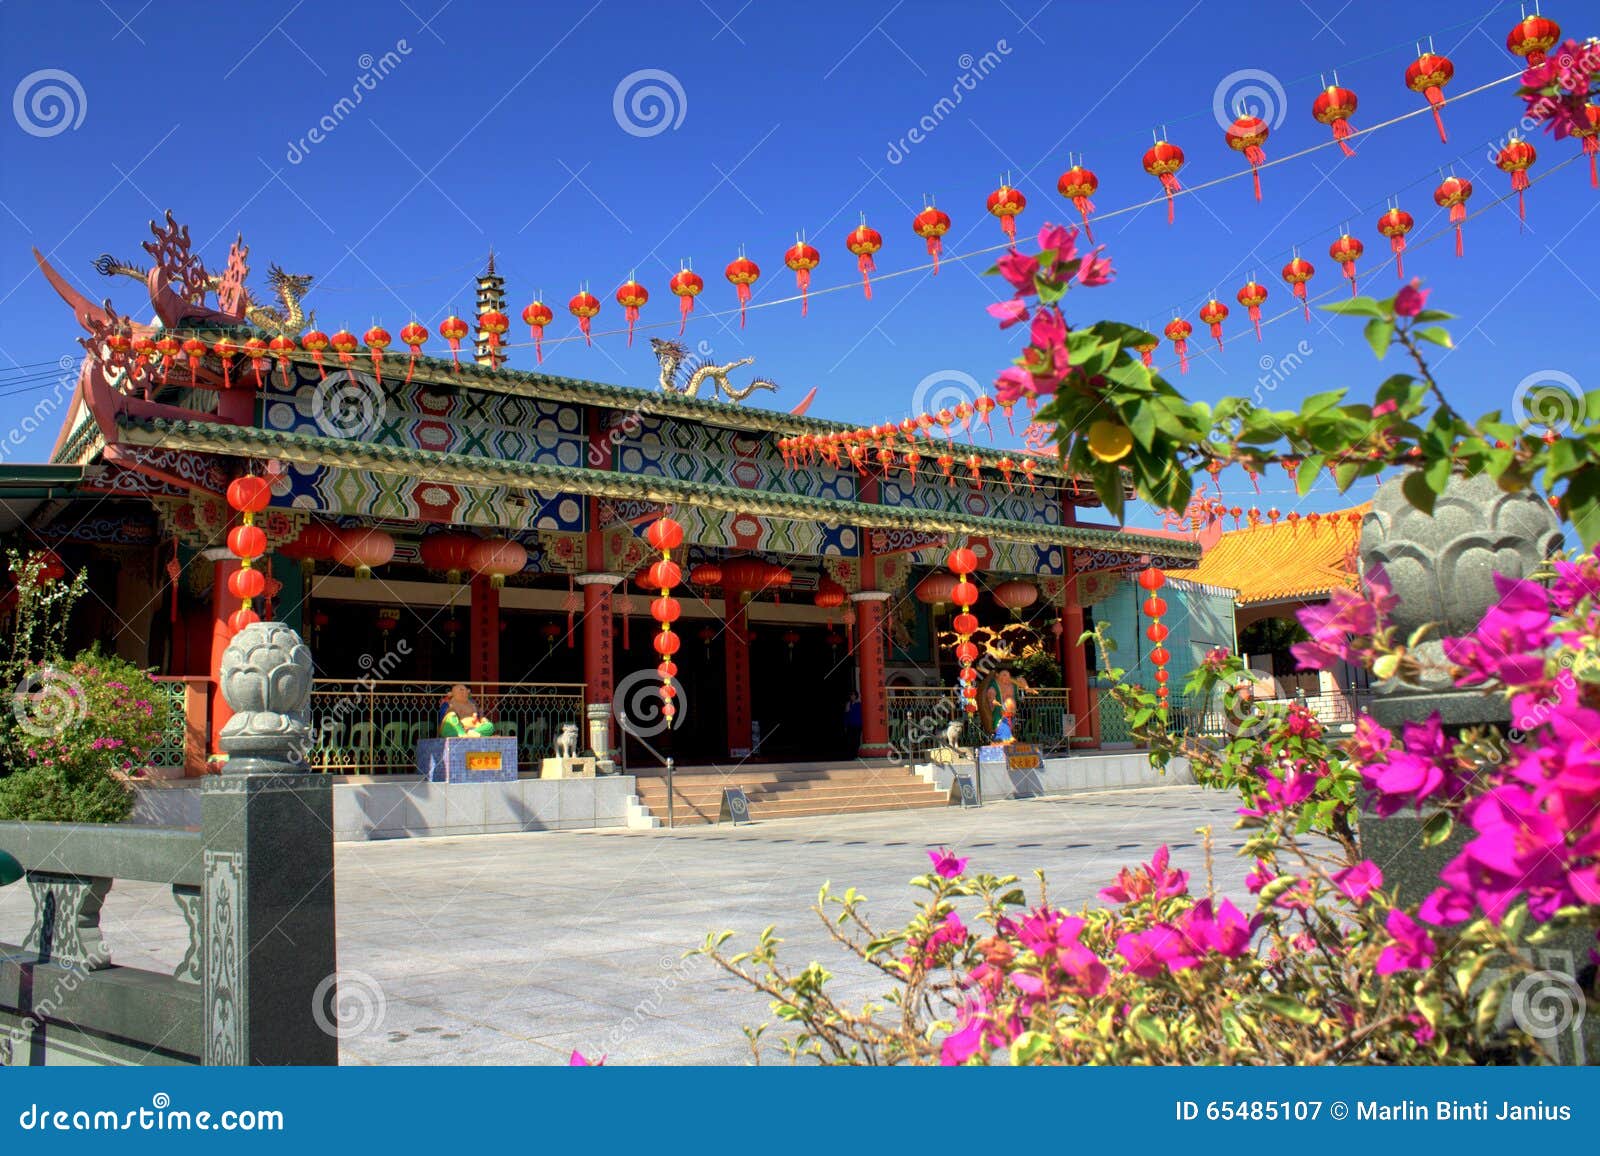 Temple chinois étant prêt pendant la nouvelle année chinoise avec les lampions chinois rouges contre un ciel bleu